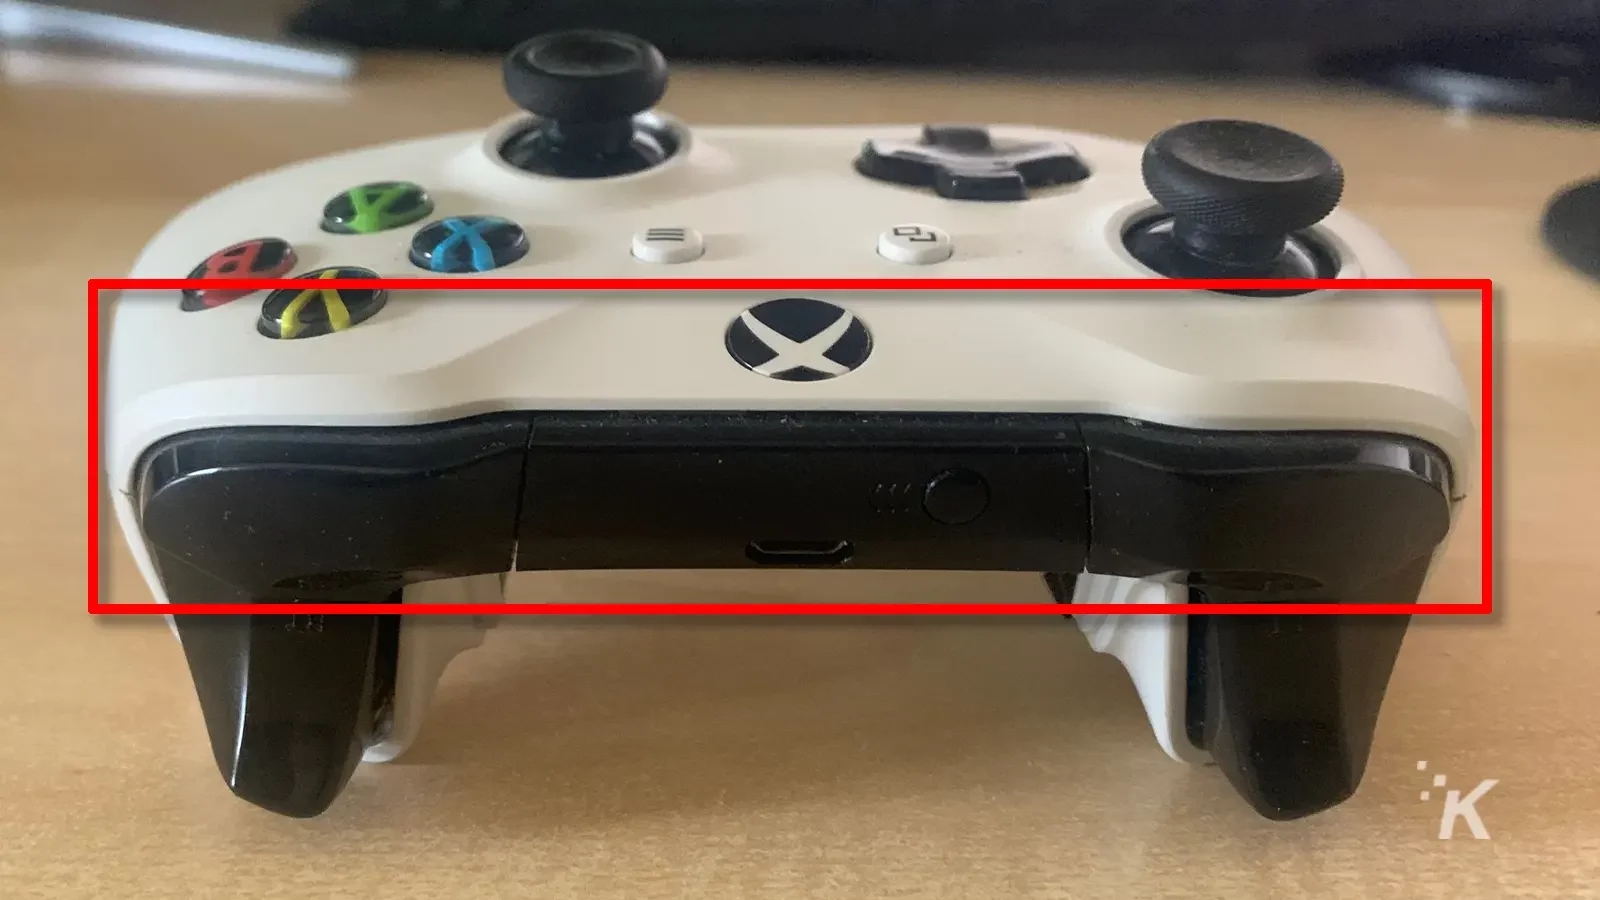 الجزء العلوي من وحدة تحكم Xbox One مع صندوق أحمر حول الجزء الأسود - Bluetooth